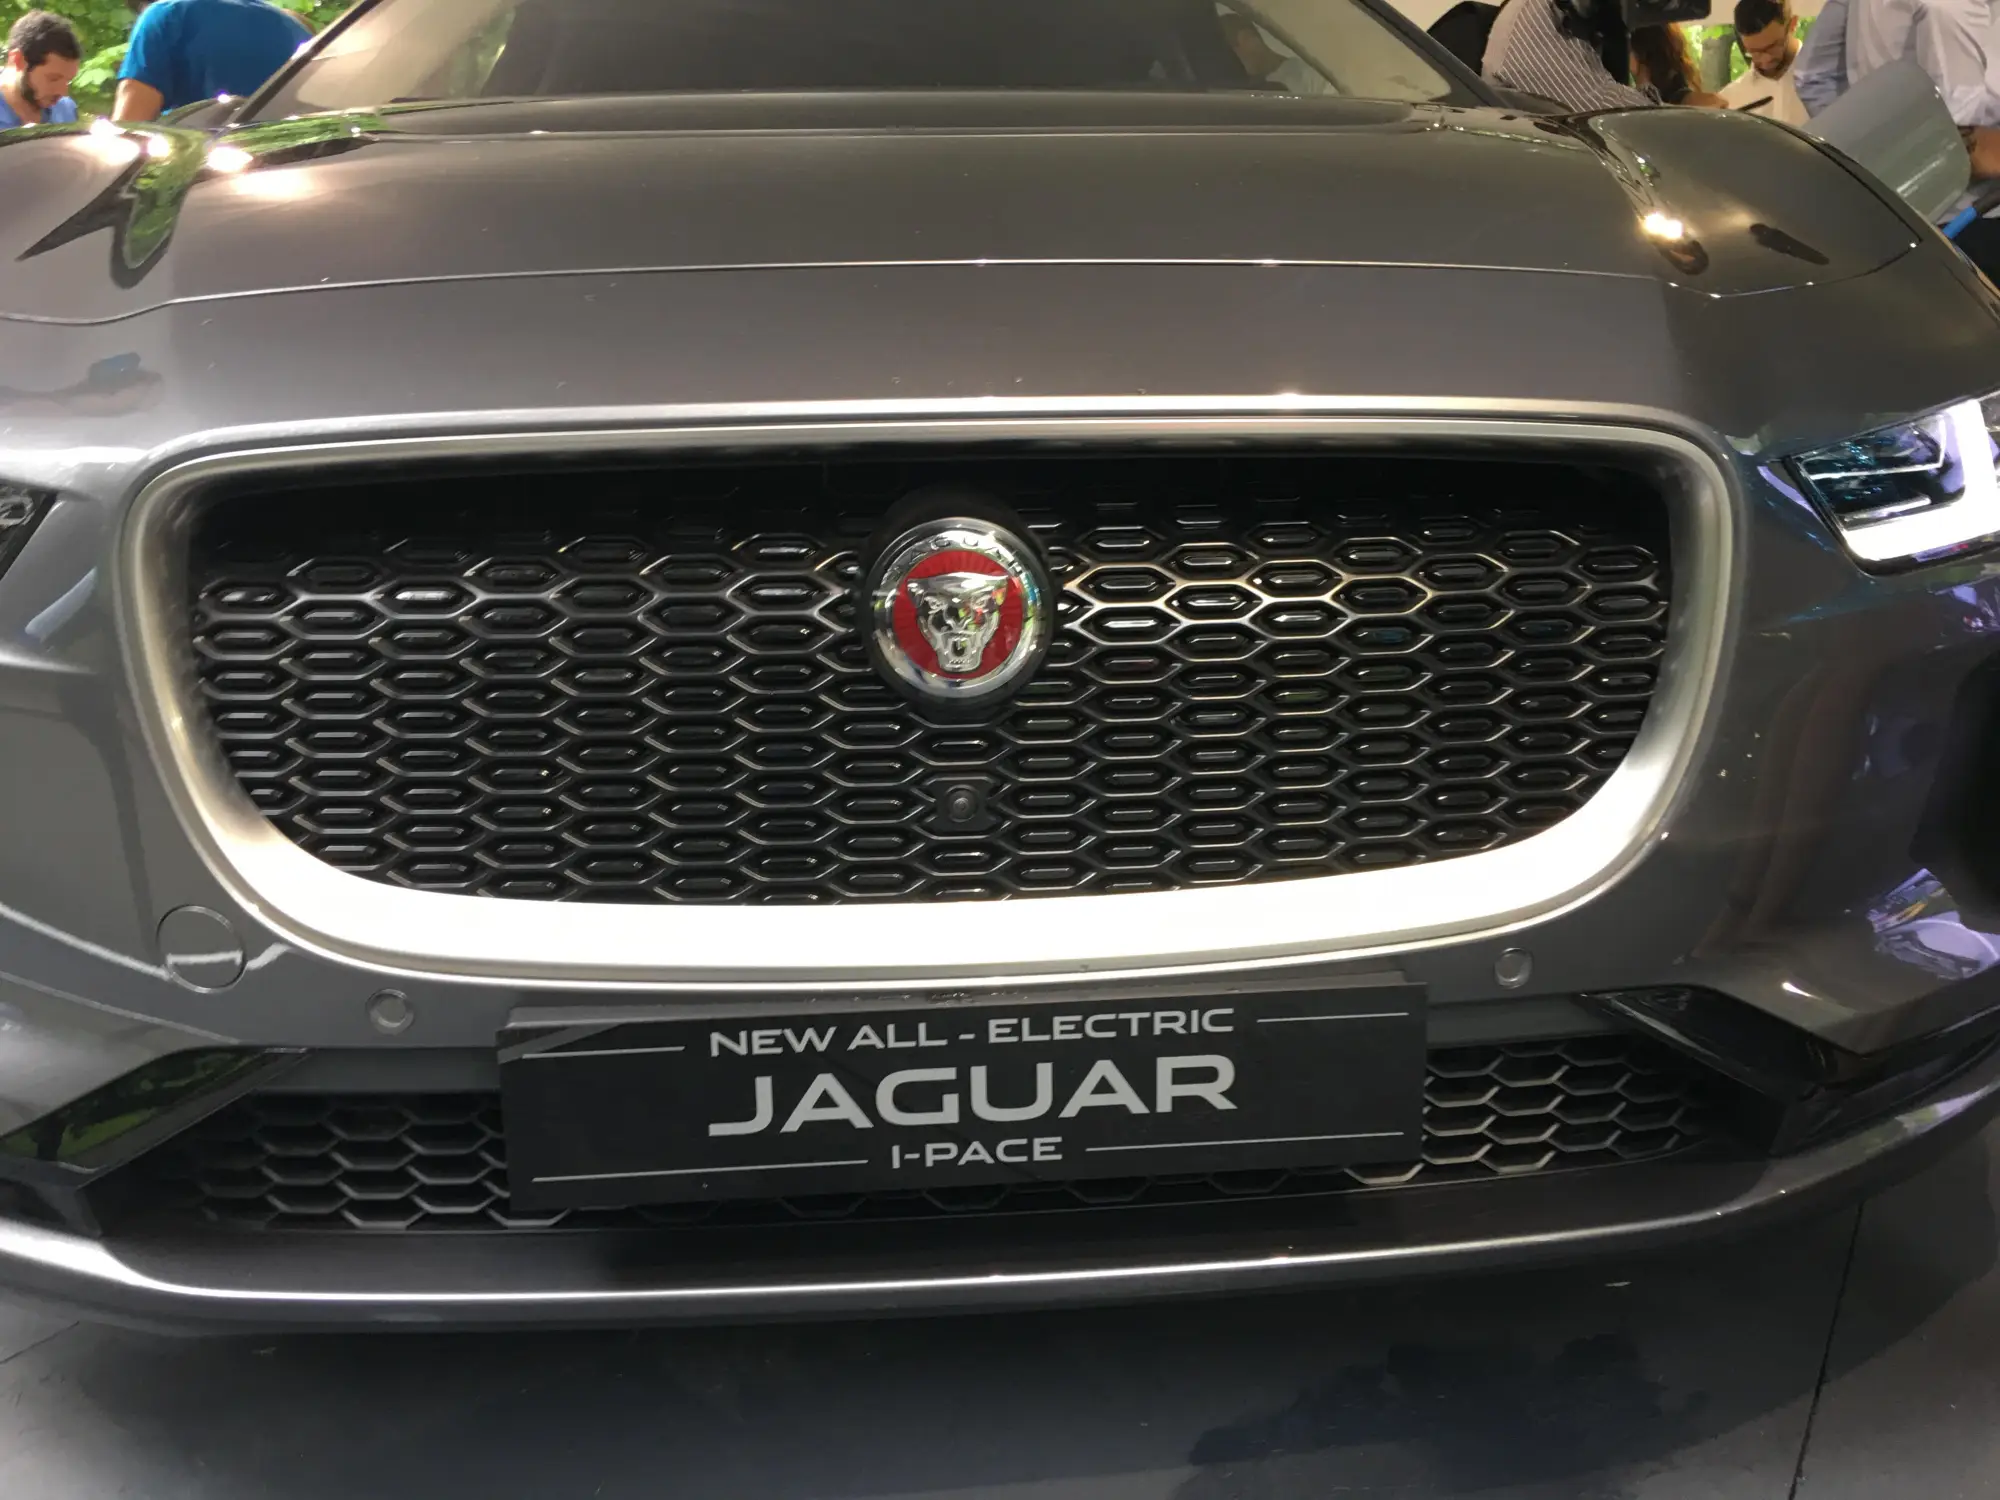 Jaguar I-PACE Parco Valentino 2018 - 3